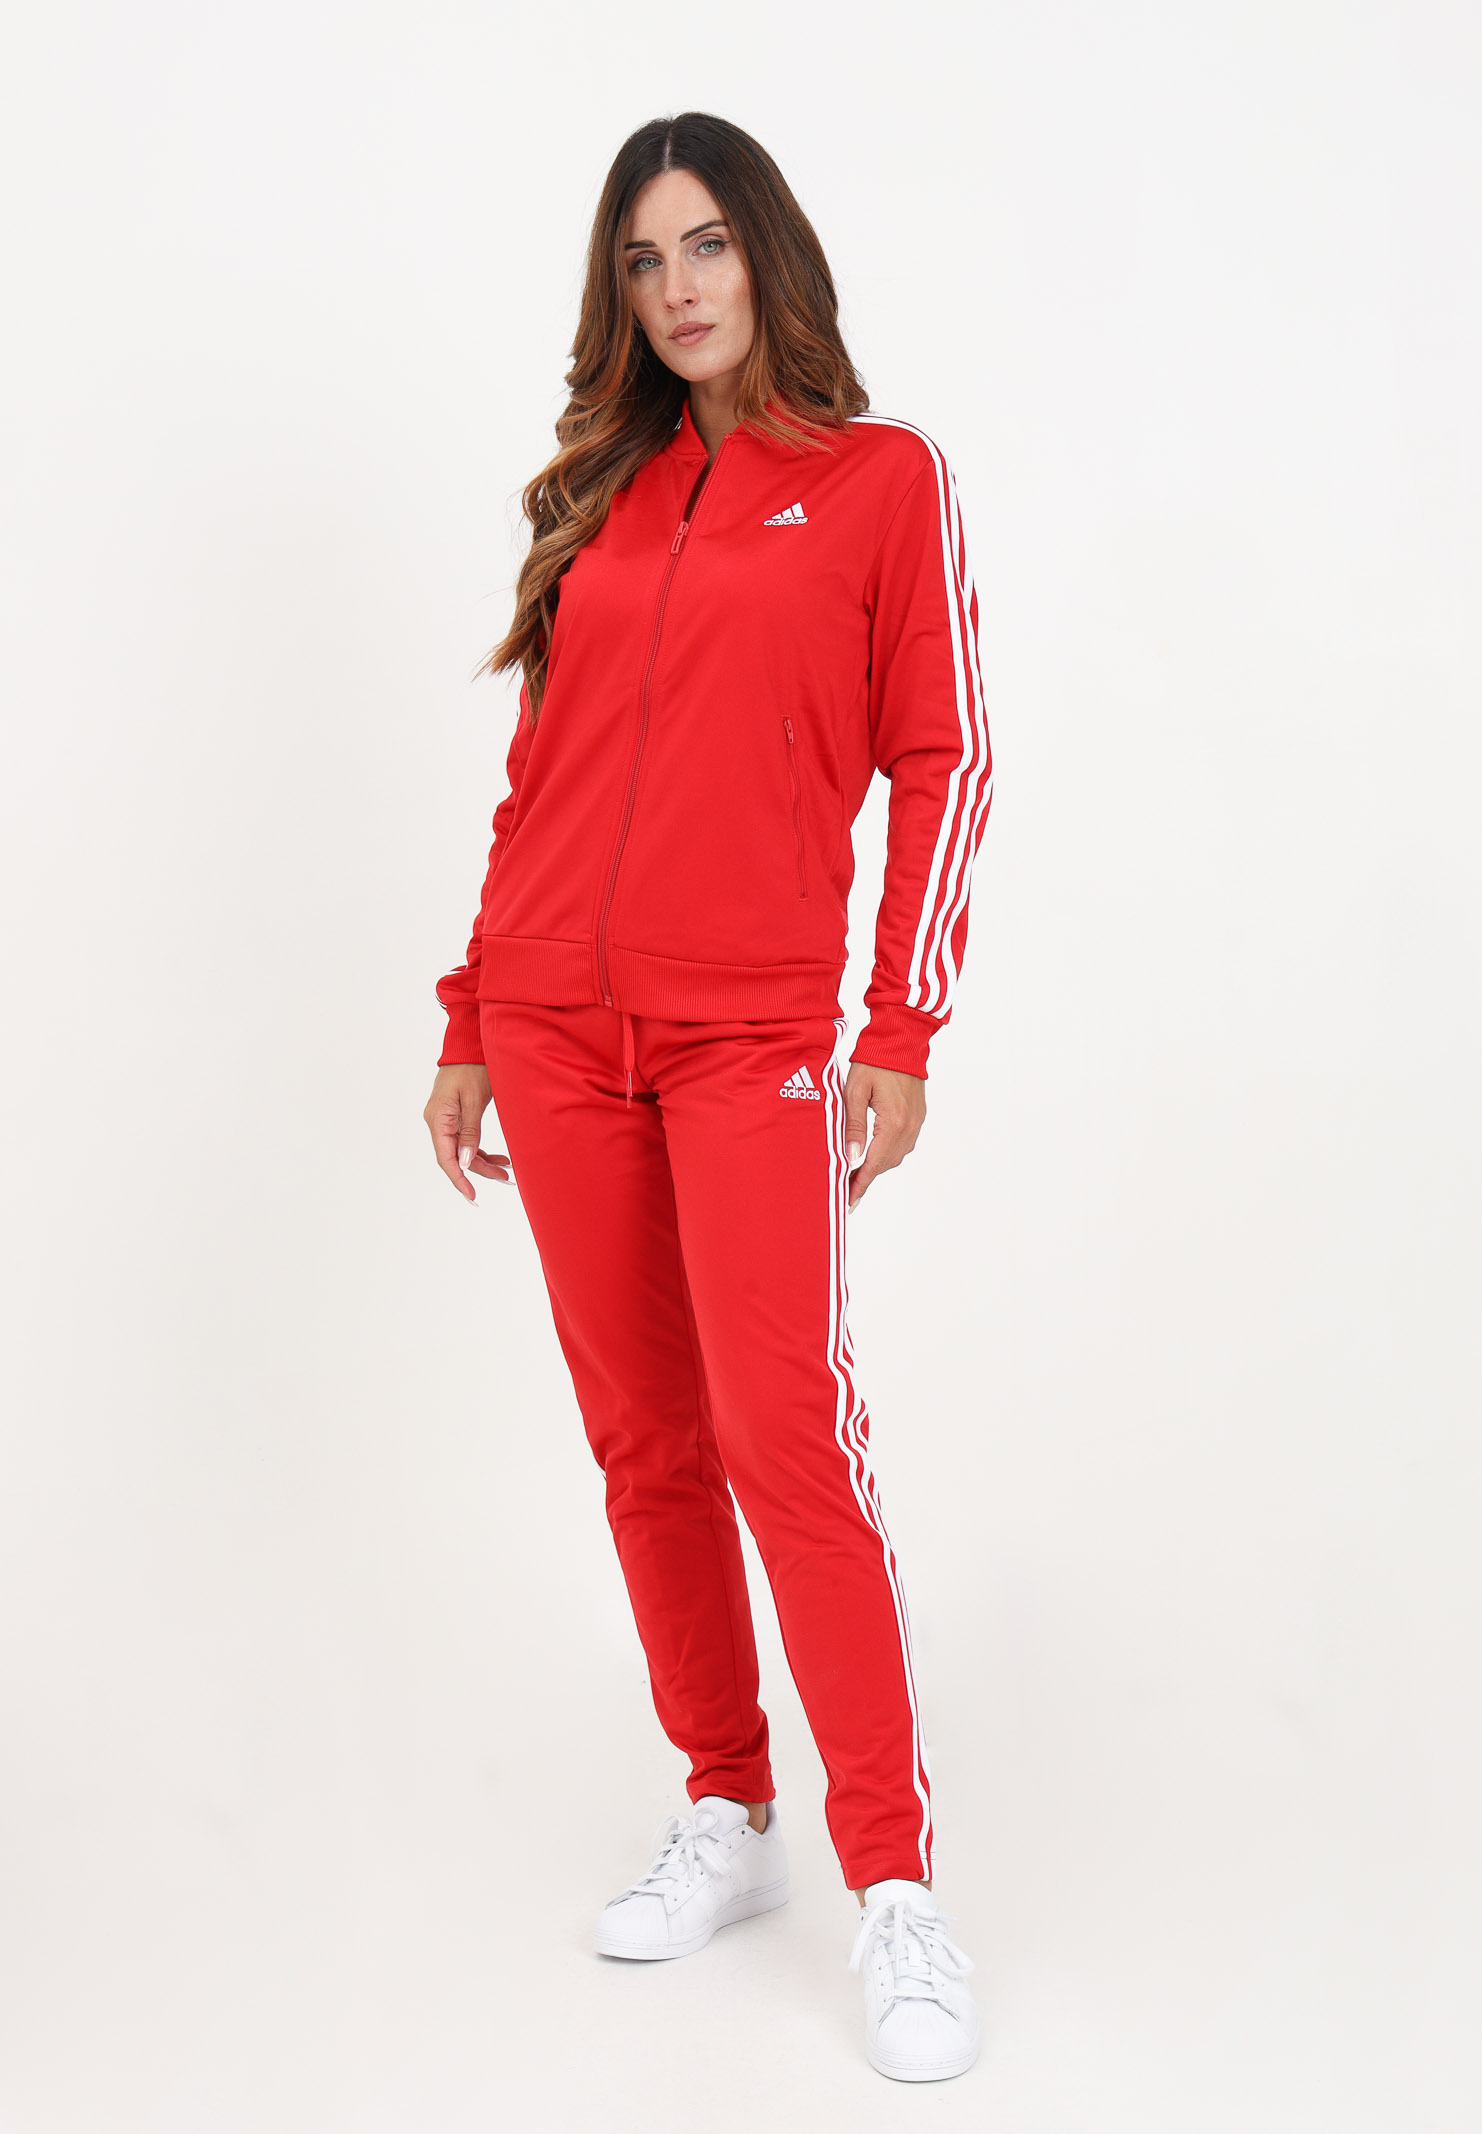 Tuta sportiva Essentials 3-Stripes rossa da donna - ADIDAS PERFORMANCE -  Pavidas